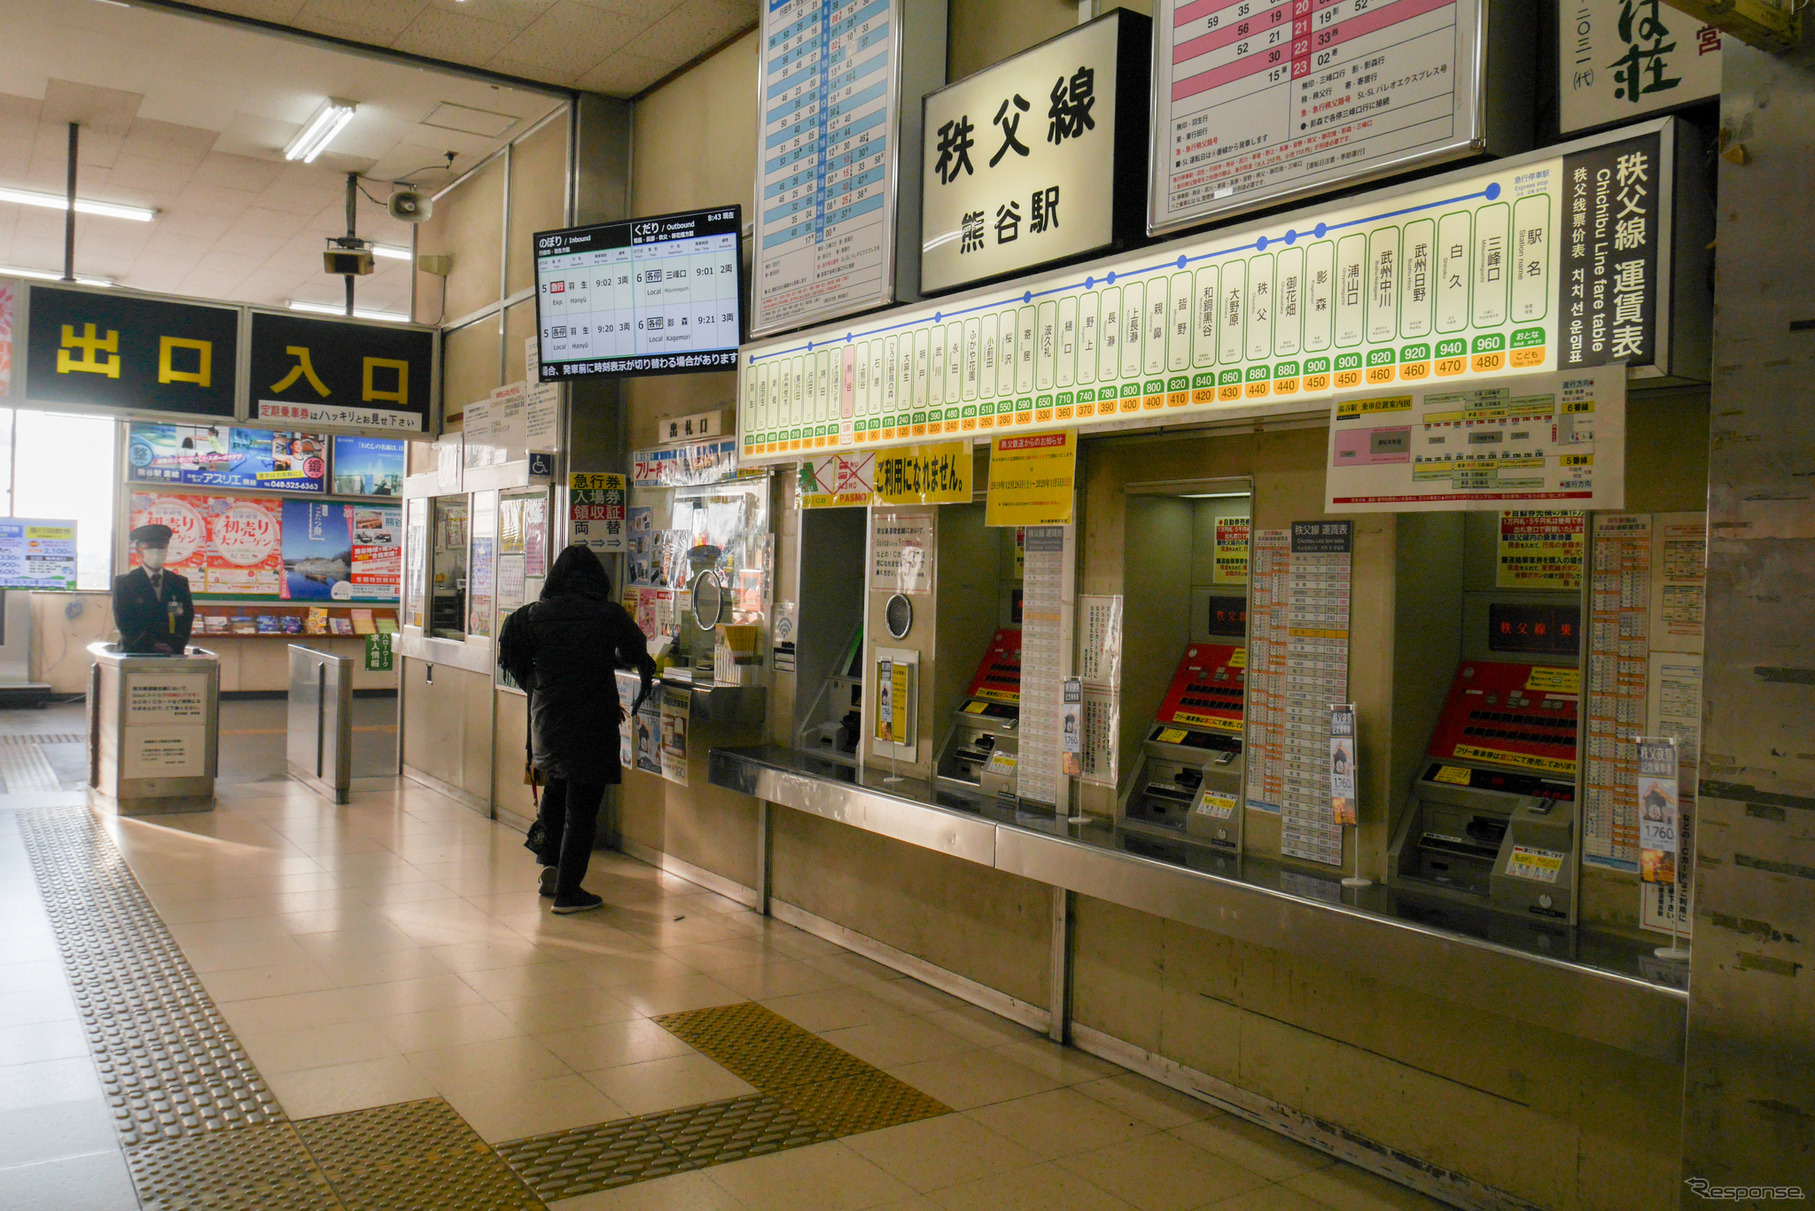 2019年12月、秩父鉄道熊谷駅の改札口。自動改札化が進んだ関東圏ではすっかり珍しくなった有人改札だが、この光景も近い将来、見ることができなくなるかもしれない。